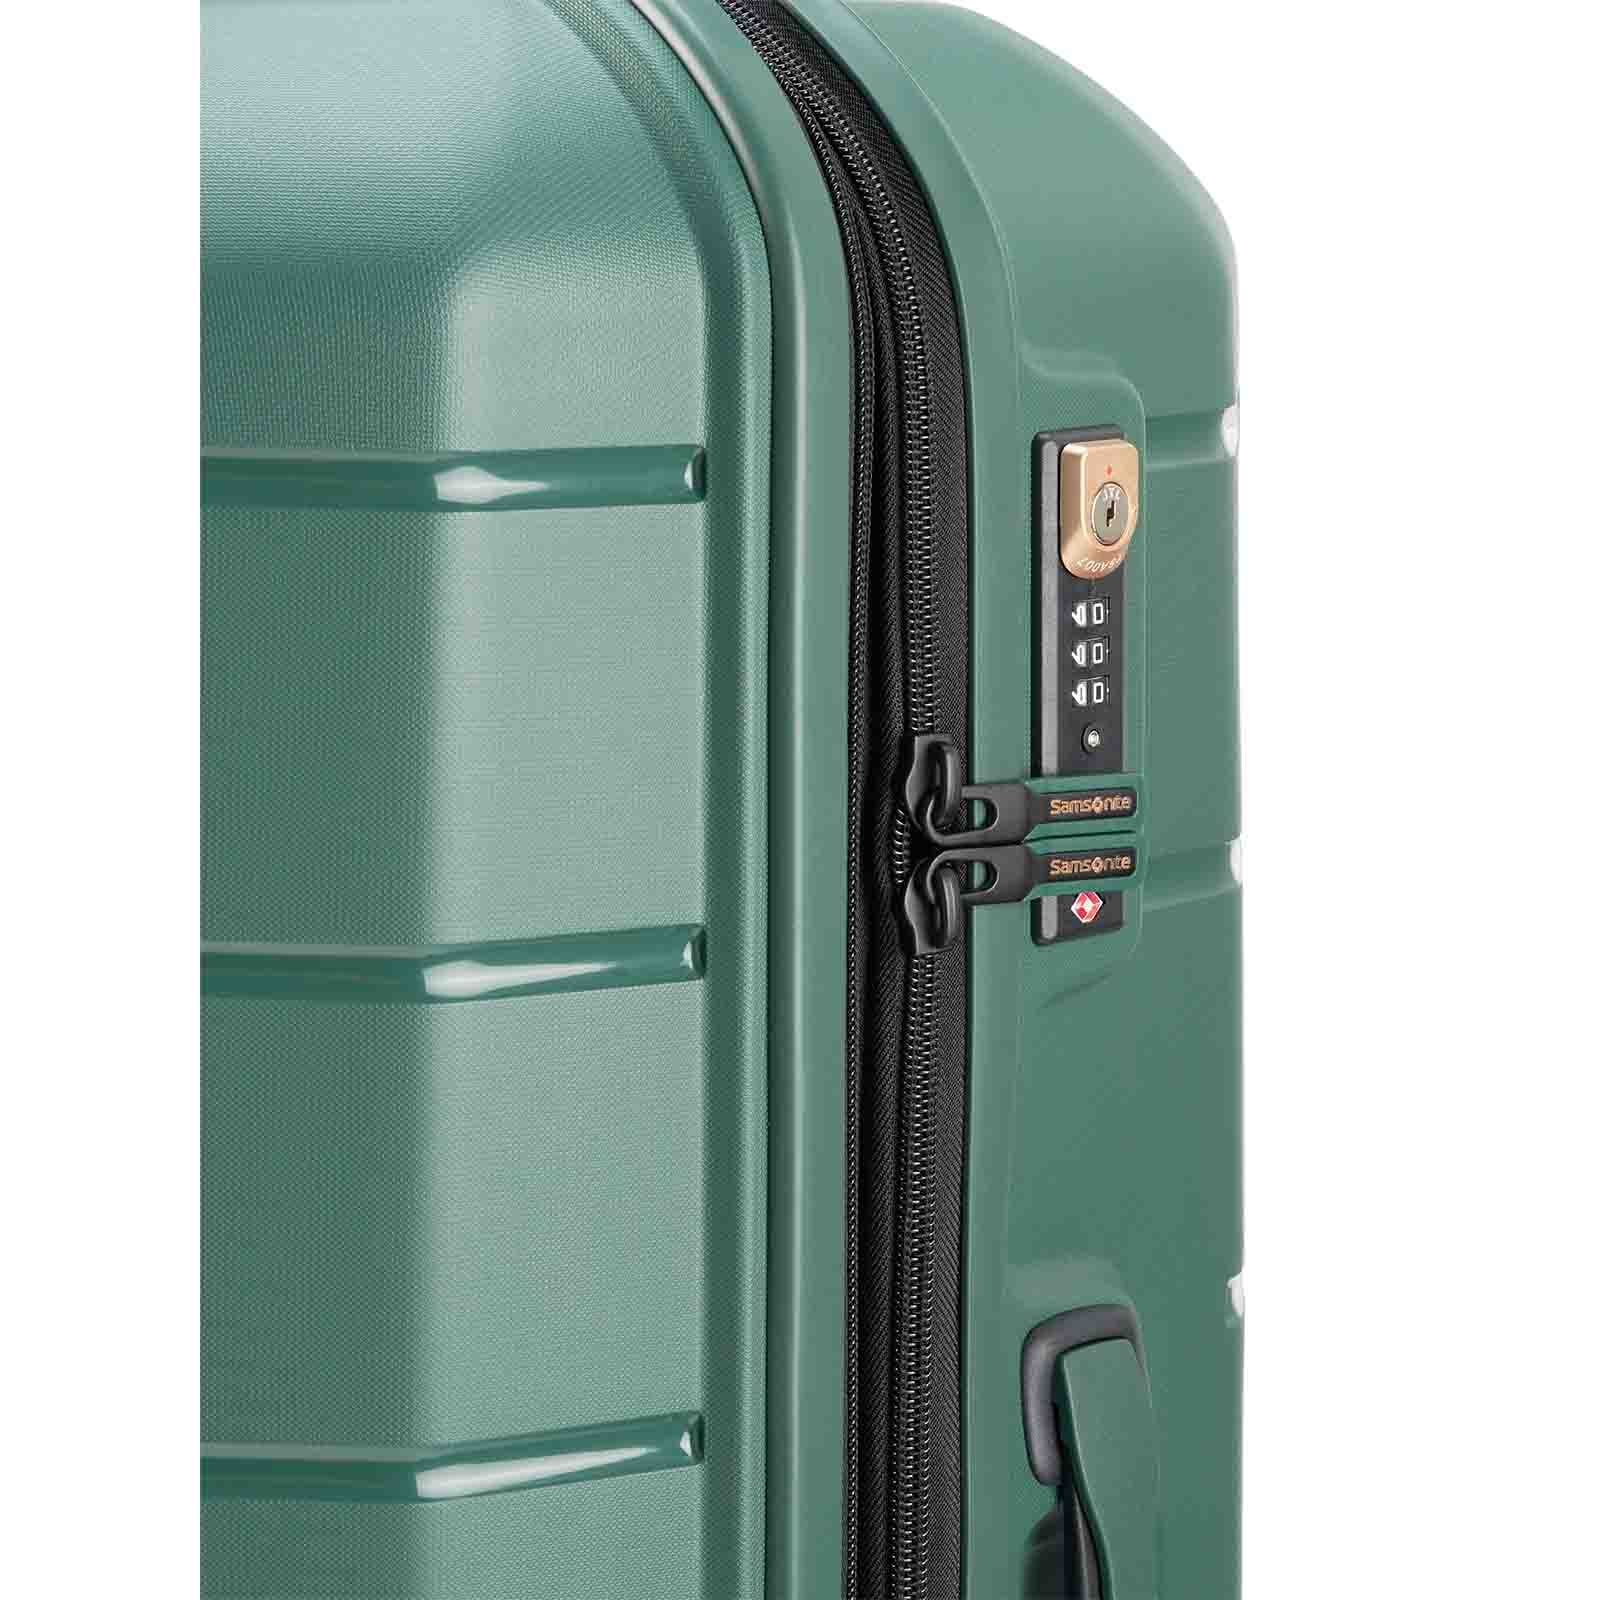 Samsonite-Oc2lite-81cm-Suitcase-Urban-Green-Lock